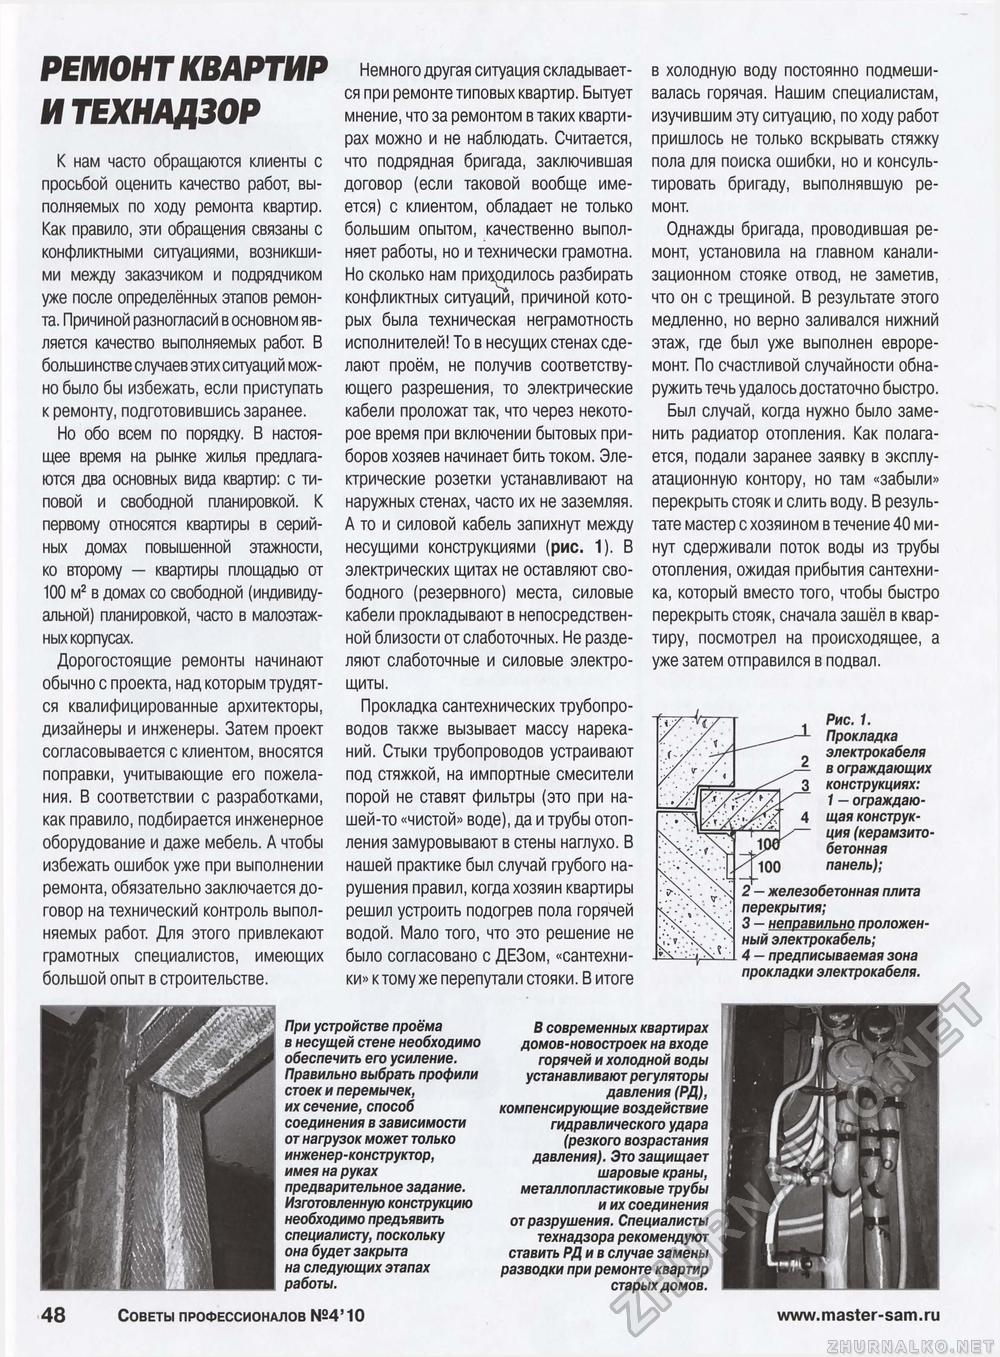 Советы профессионалов 2010-04, страница 48